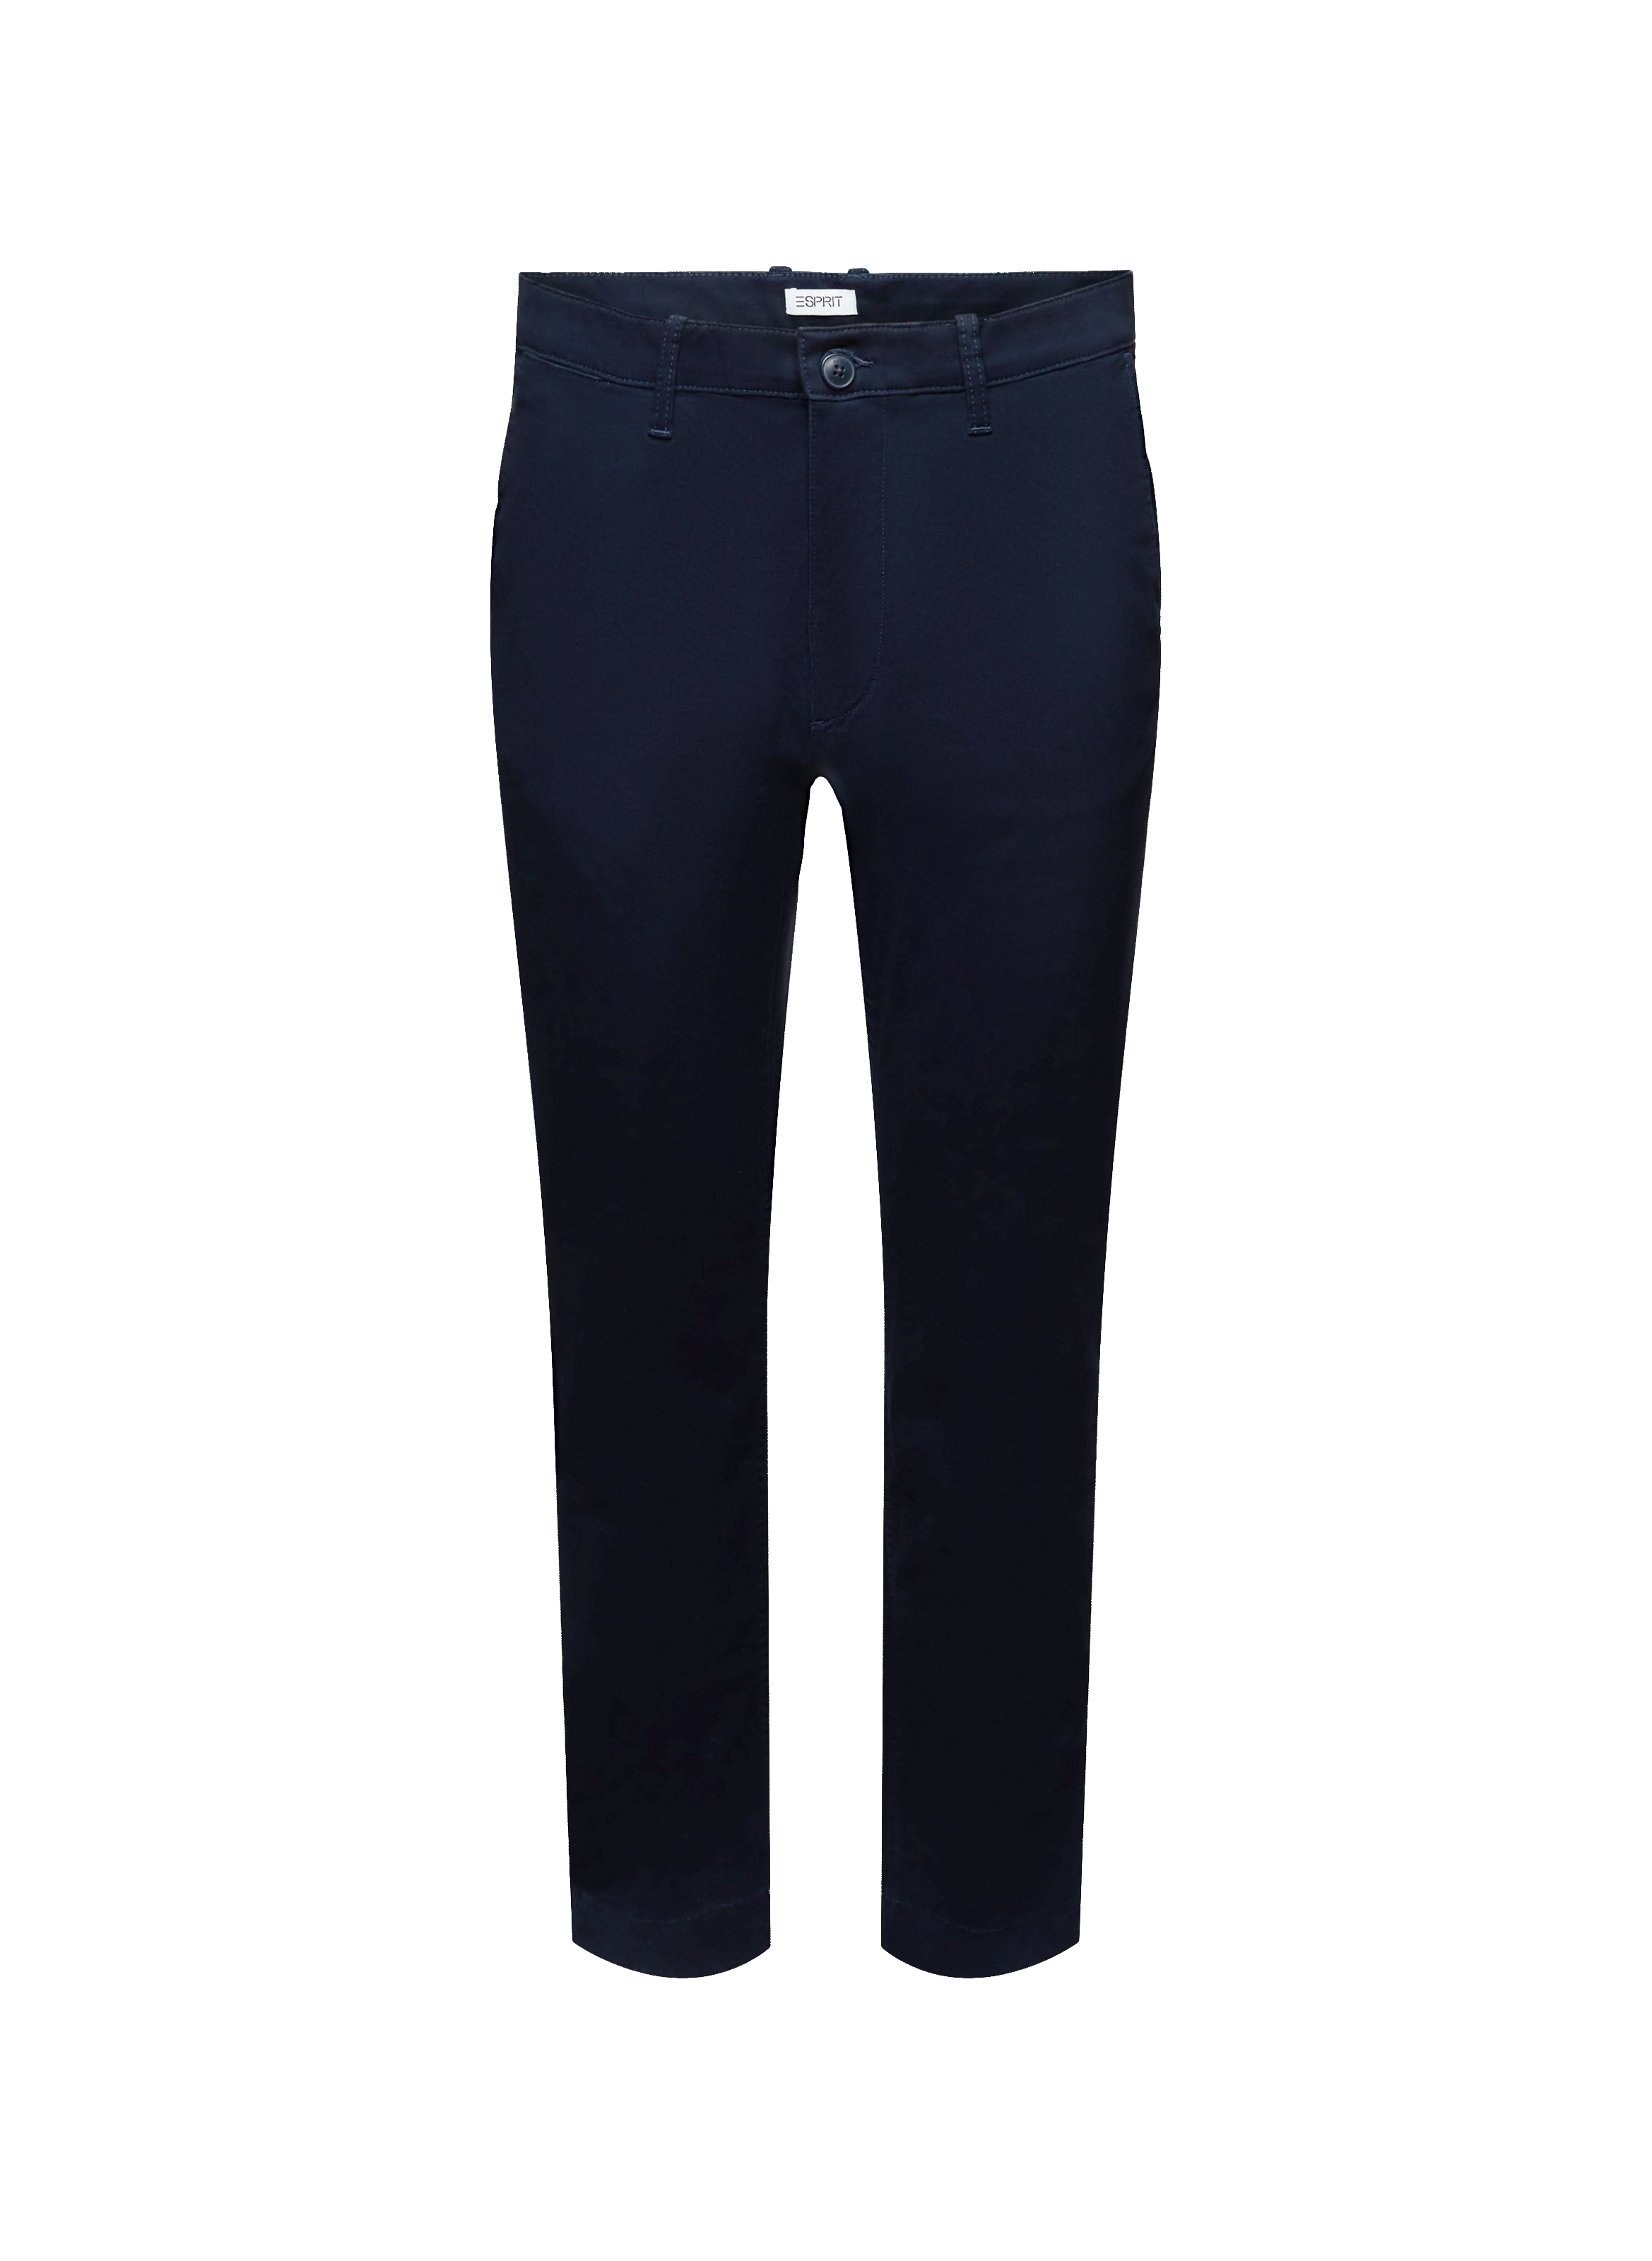 Esprit Afblegede blå jeans - Black 'Penton' leather trousers AllSaints -  GenesinlifeShops Comoros